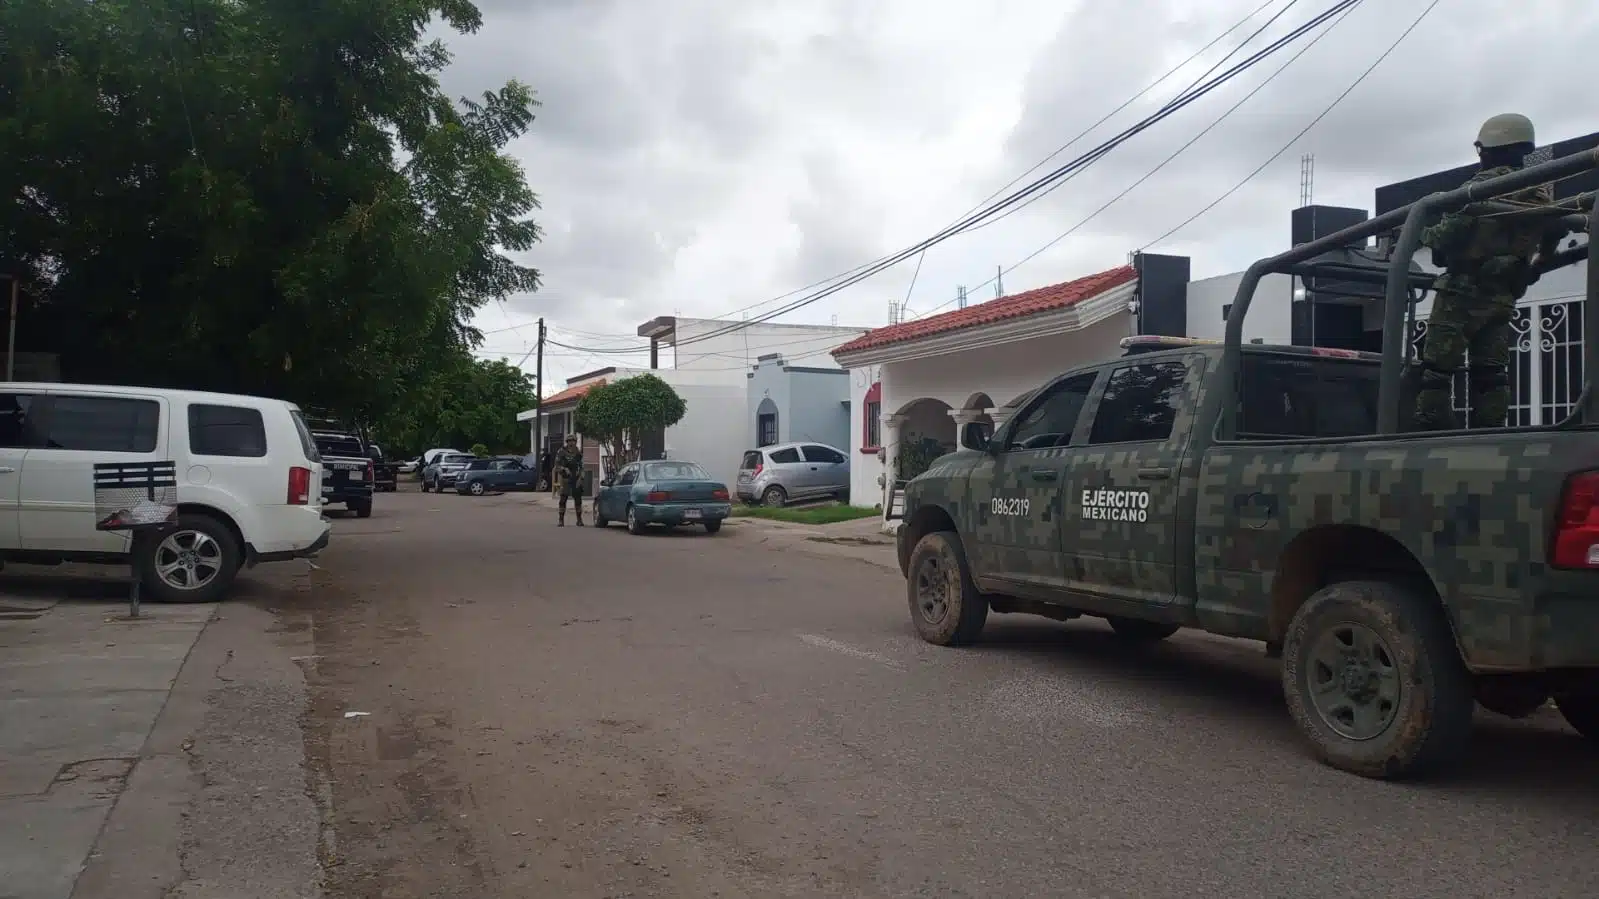 Camión, camioneta y personas con uniforme del Ejército Mexicano, casas y carros estacionados